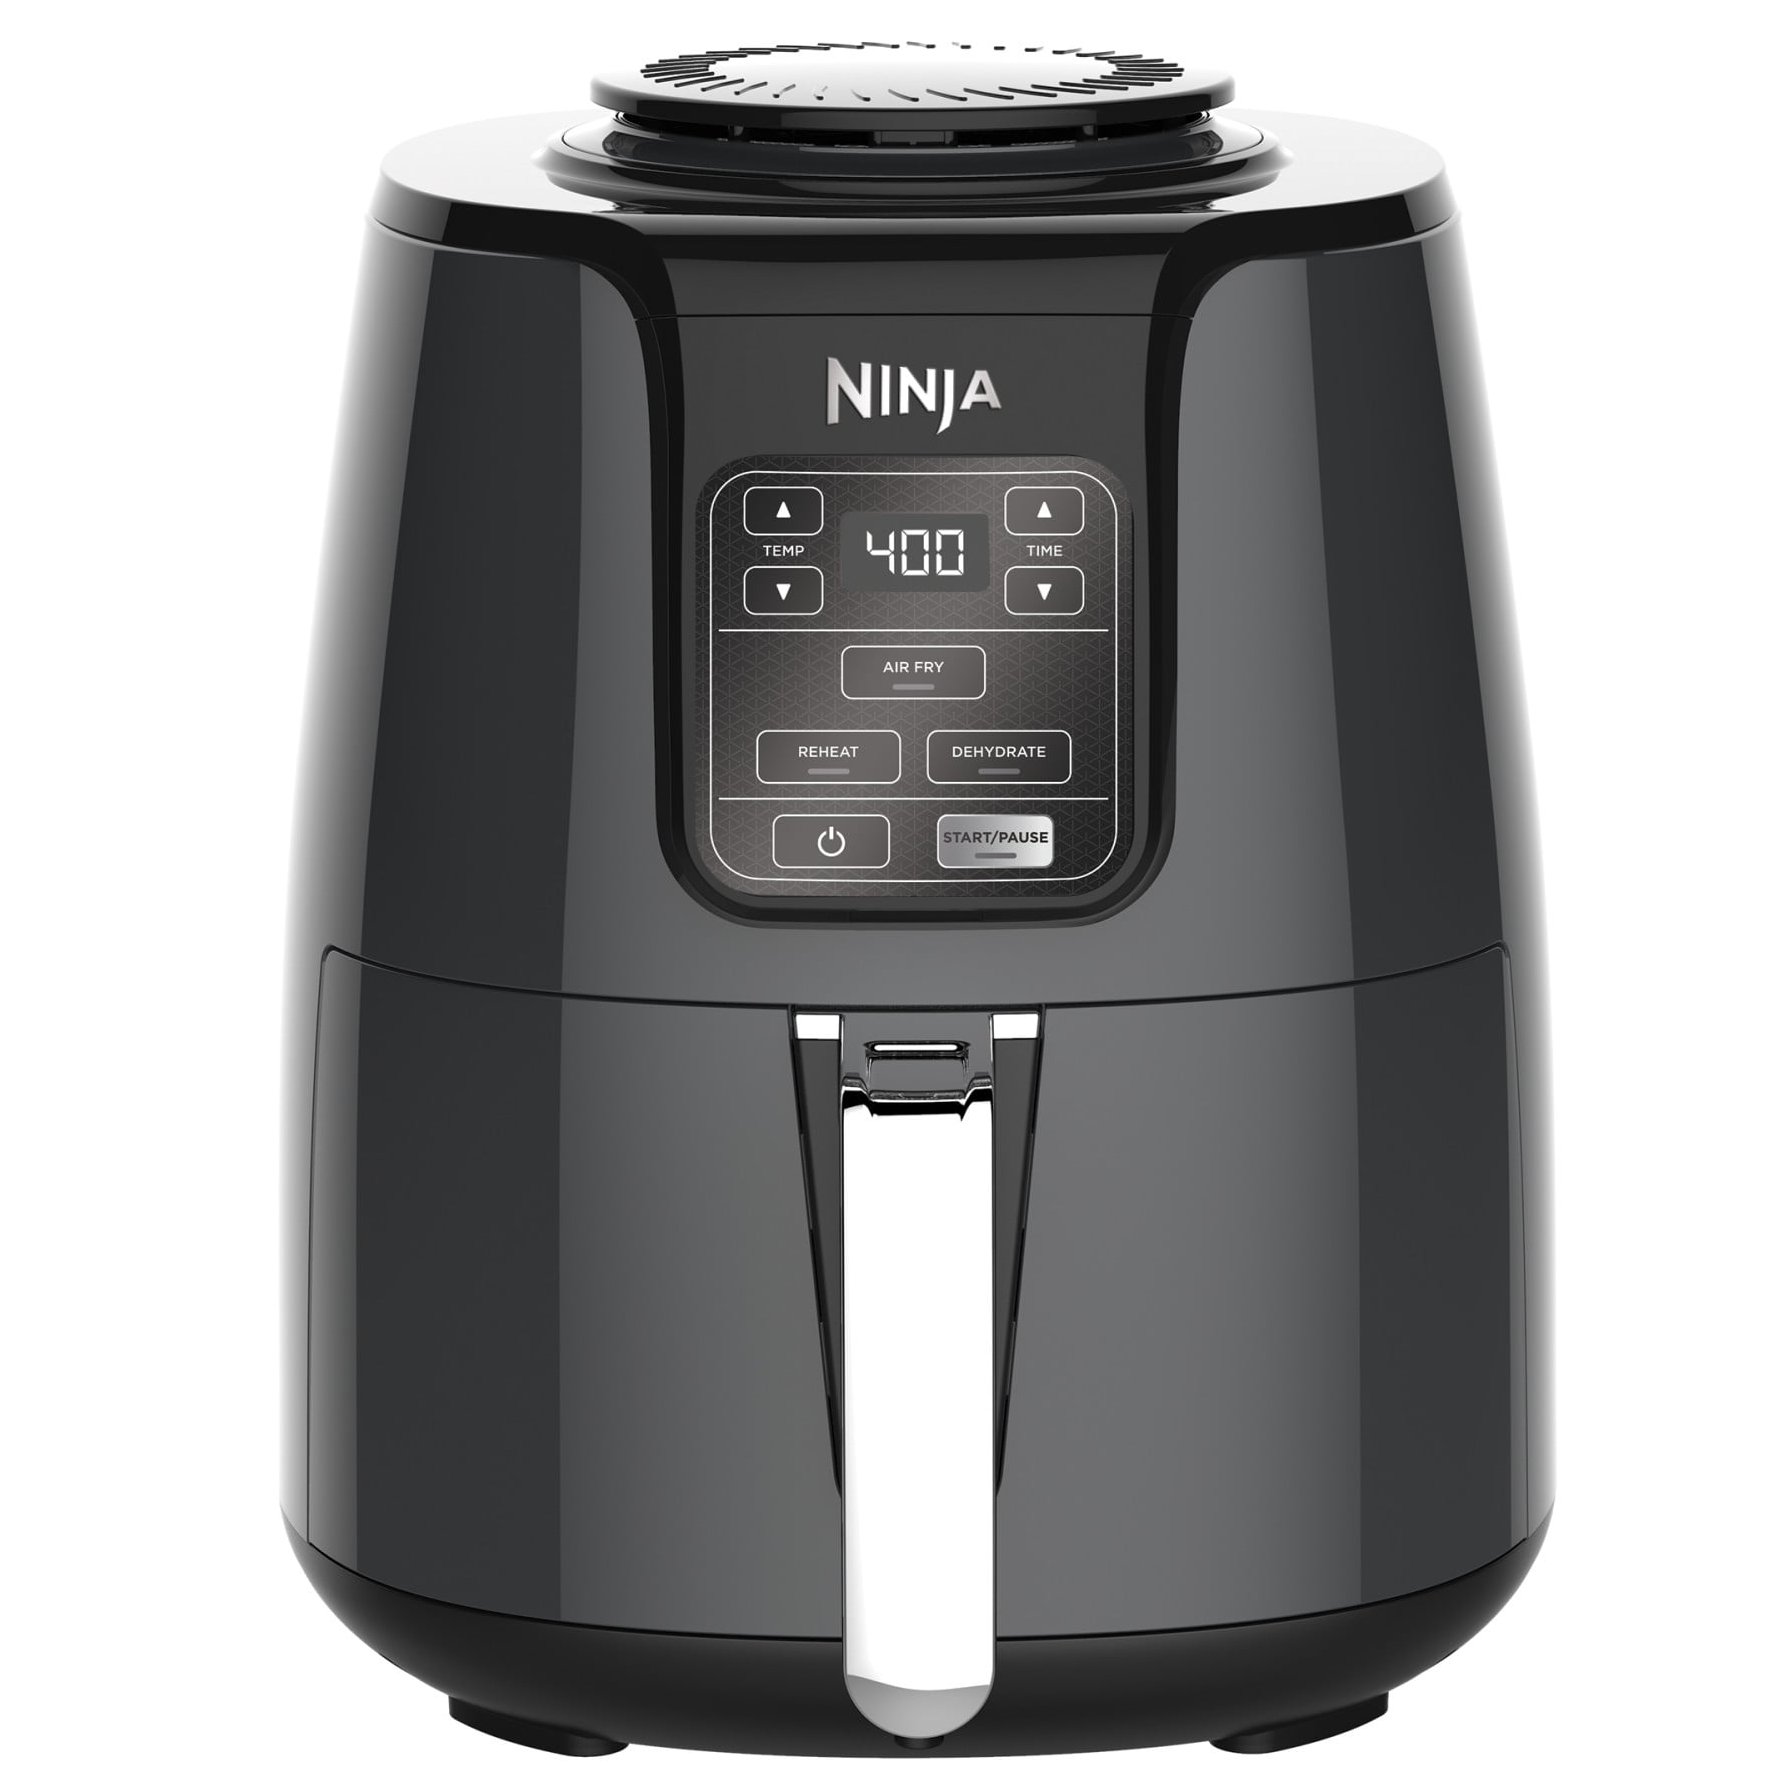 Ninja 4QT Air Fryer, Black, AF100WM - image 1 of 7